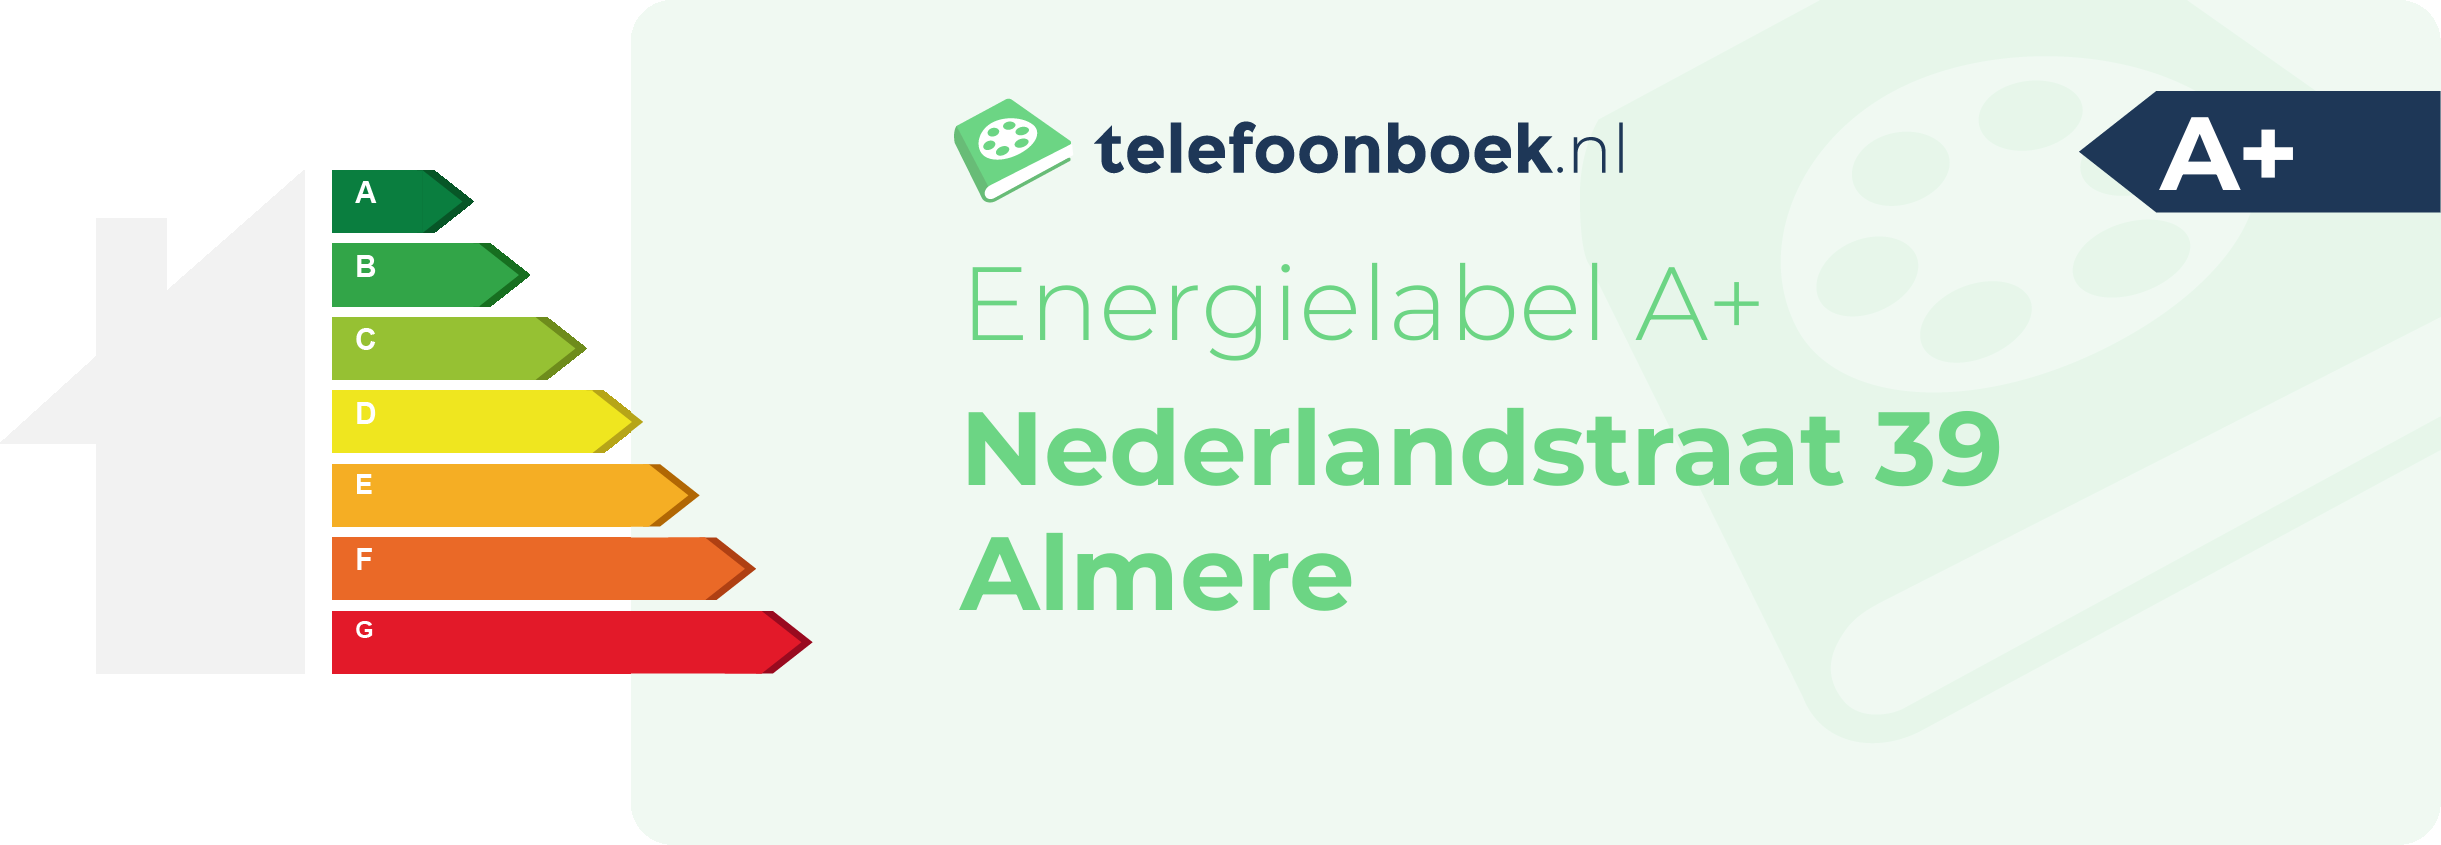 Energielabel Nederlandstraat 39 Almere